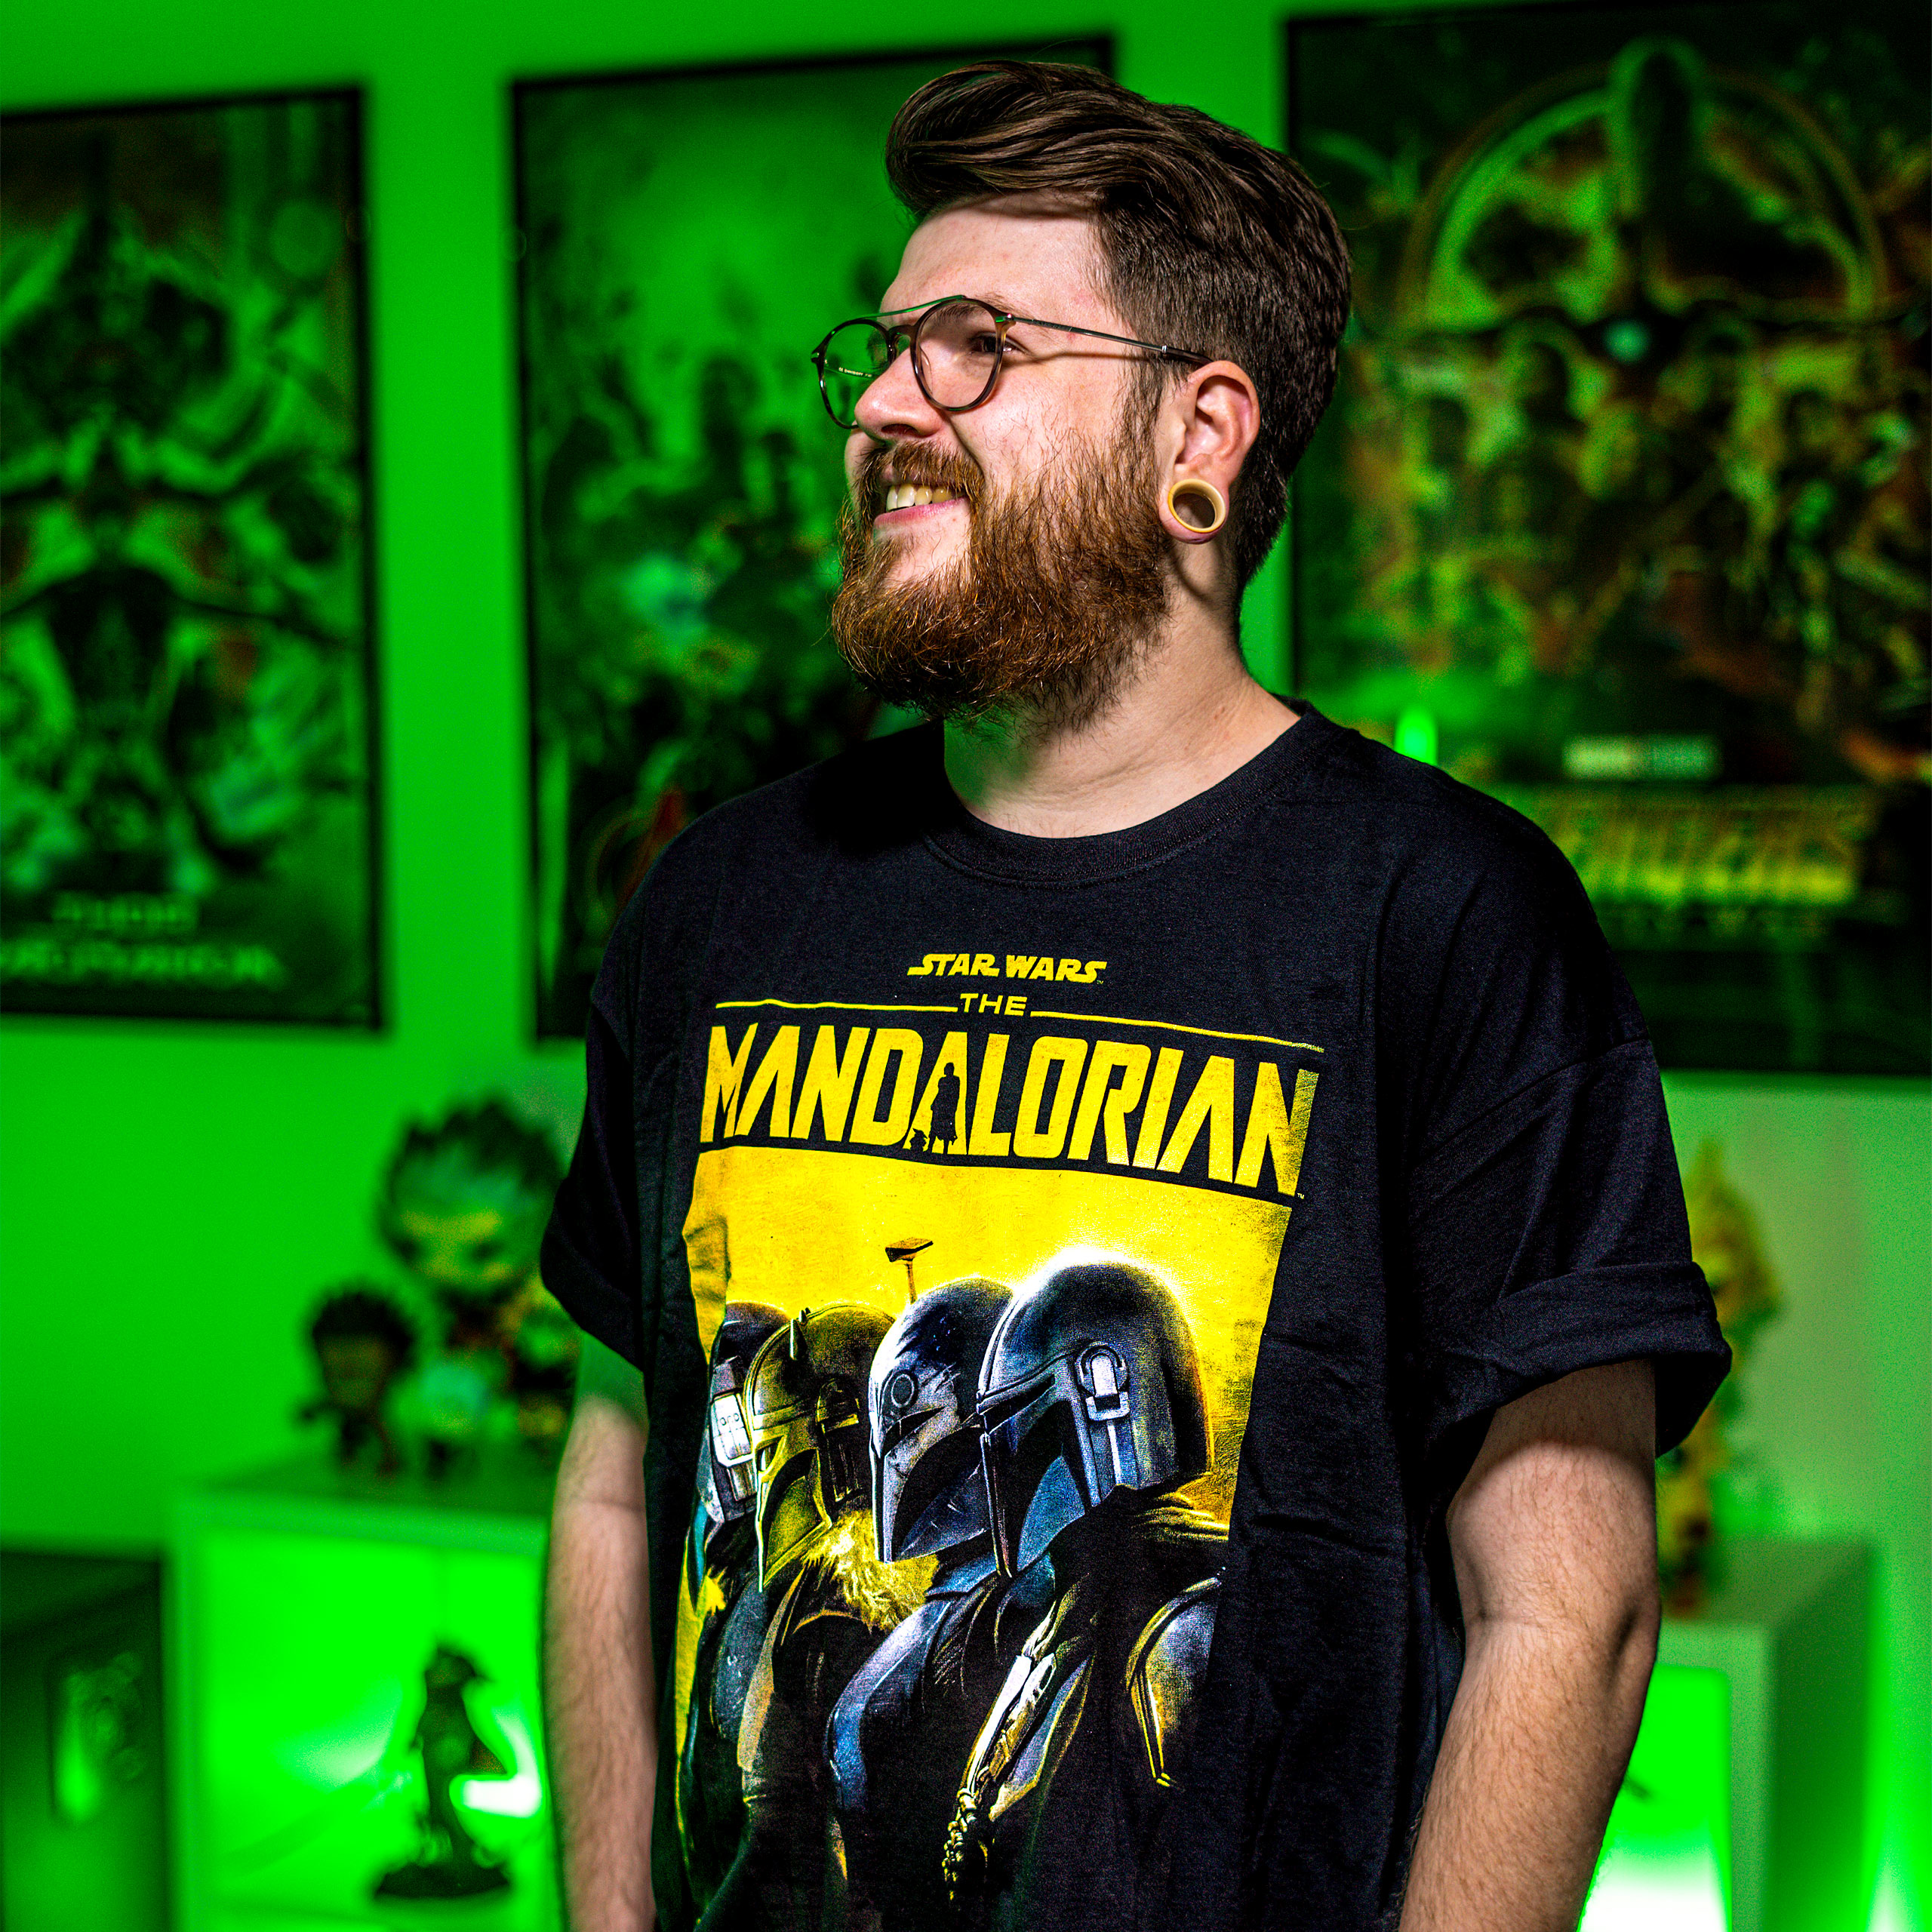 Mandalorian Creed T-Shirt zwart - Star Wars The Mandalorian